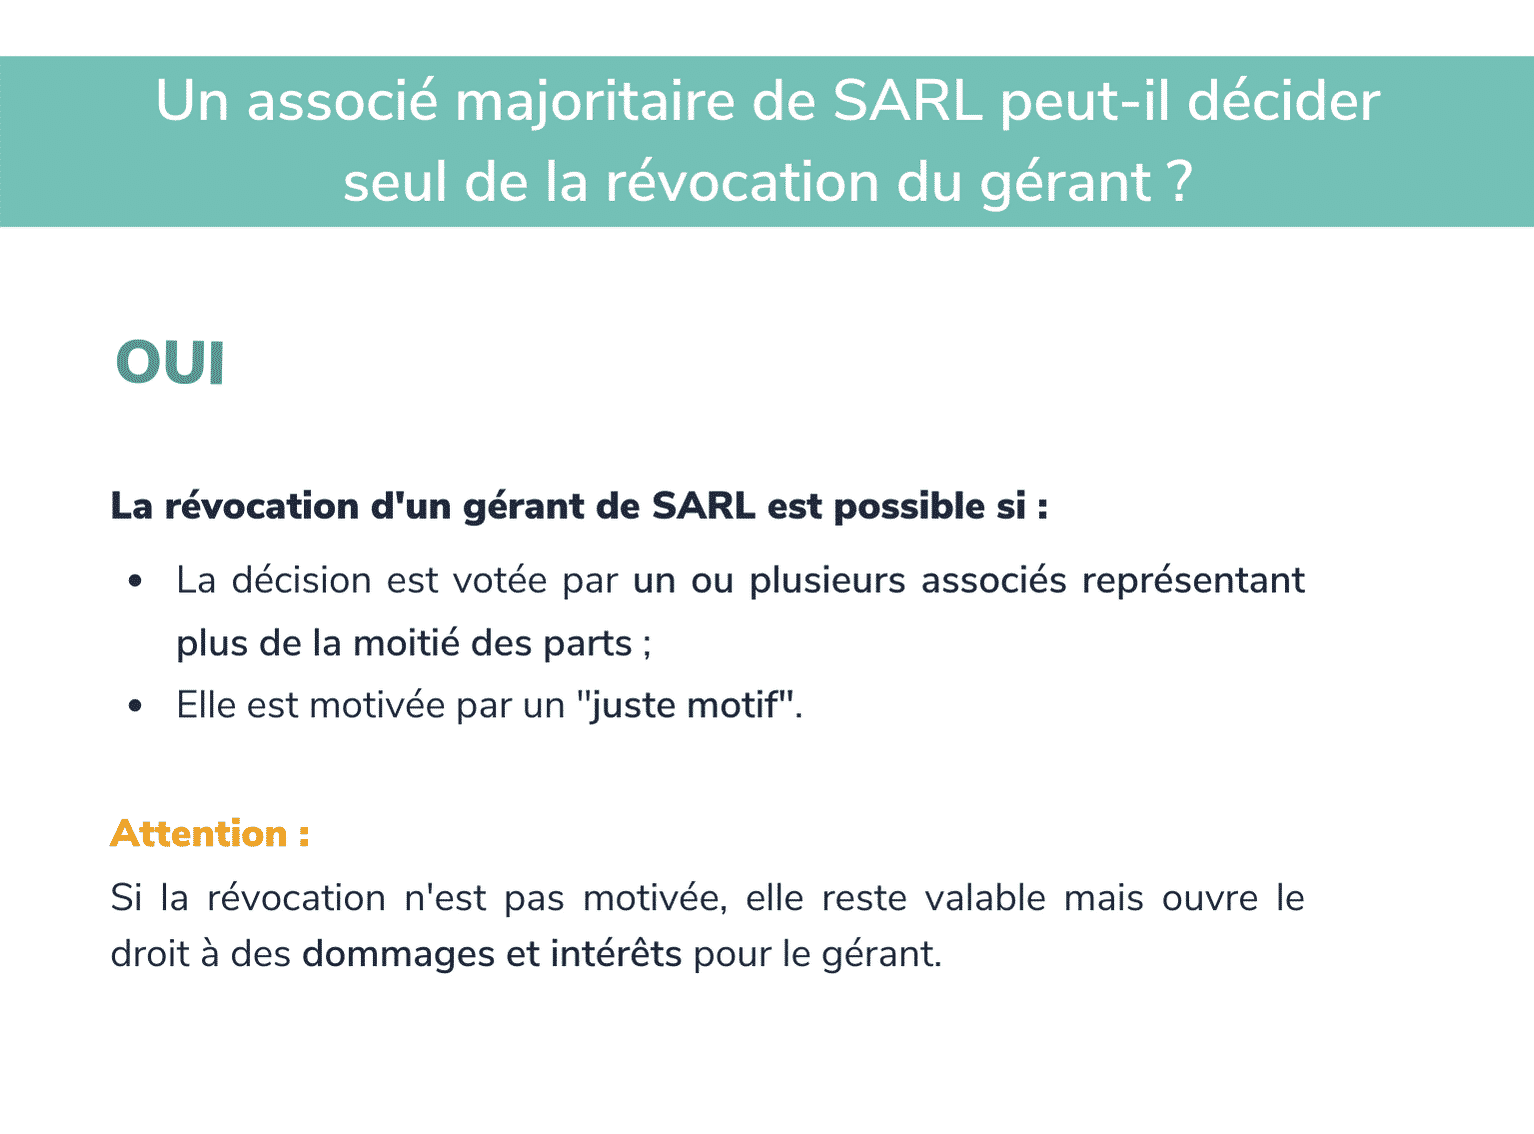 Un associé majoritaire peut-il décider seul de la révocation du gérant de SARL ?